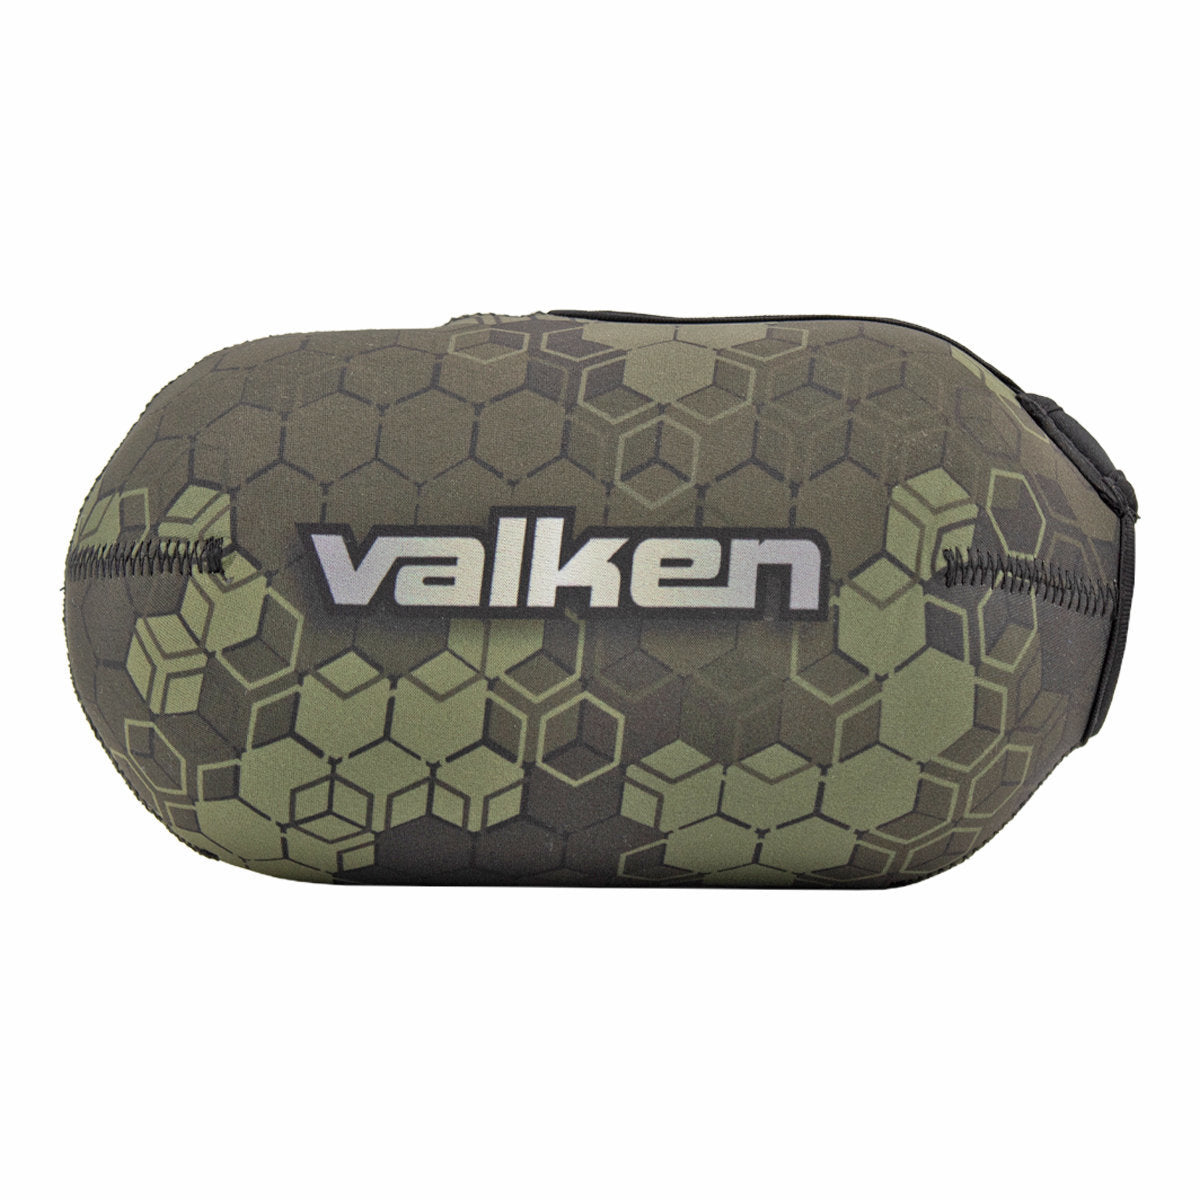 Valken Fate Gfx Tank Cover - 3D Cube Olive Camo